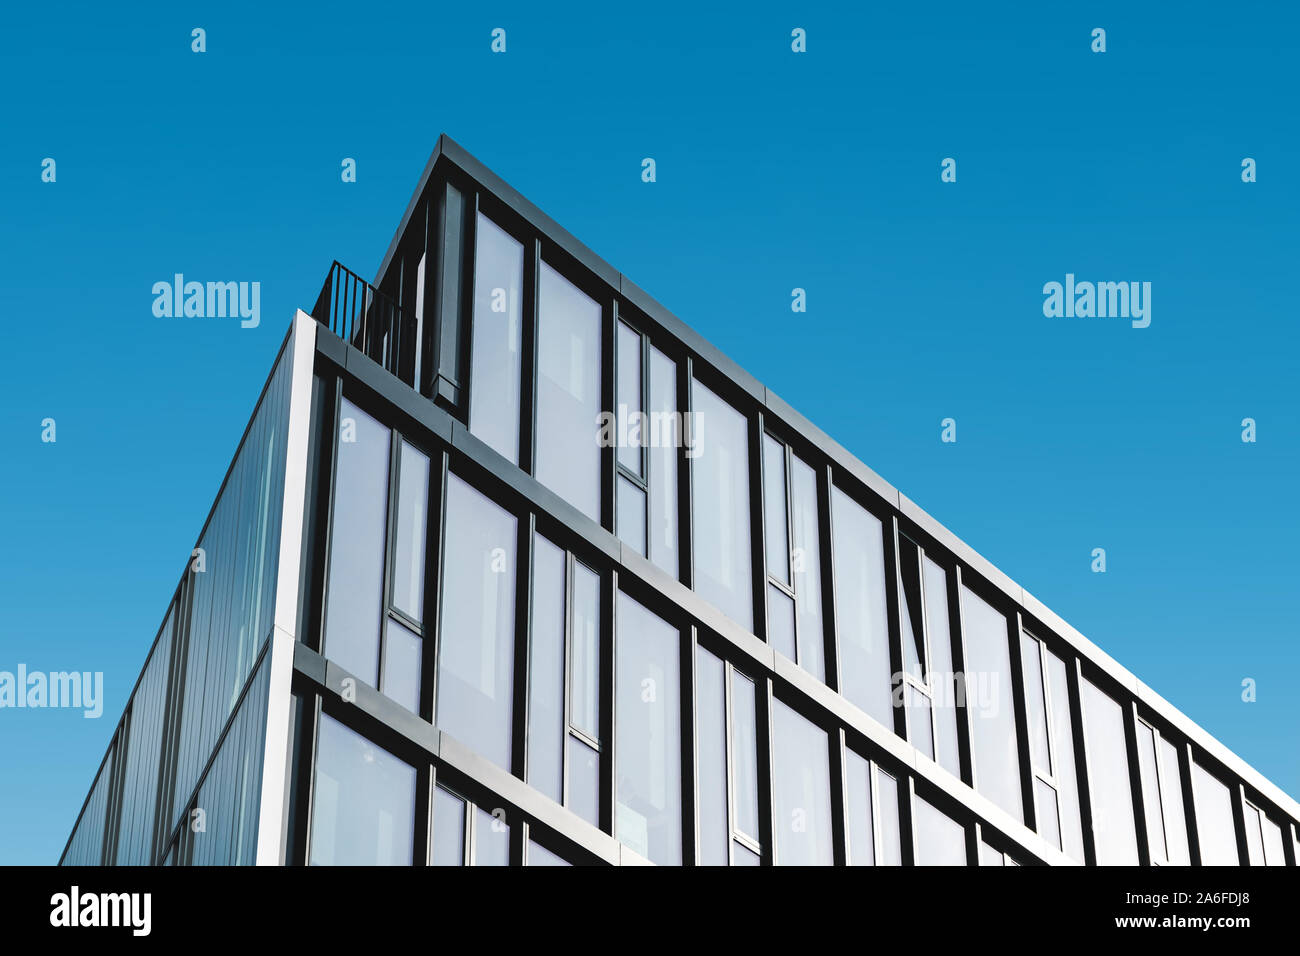 modern office building facade, commercial real estate exterior Stock Photo